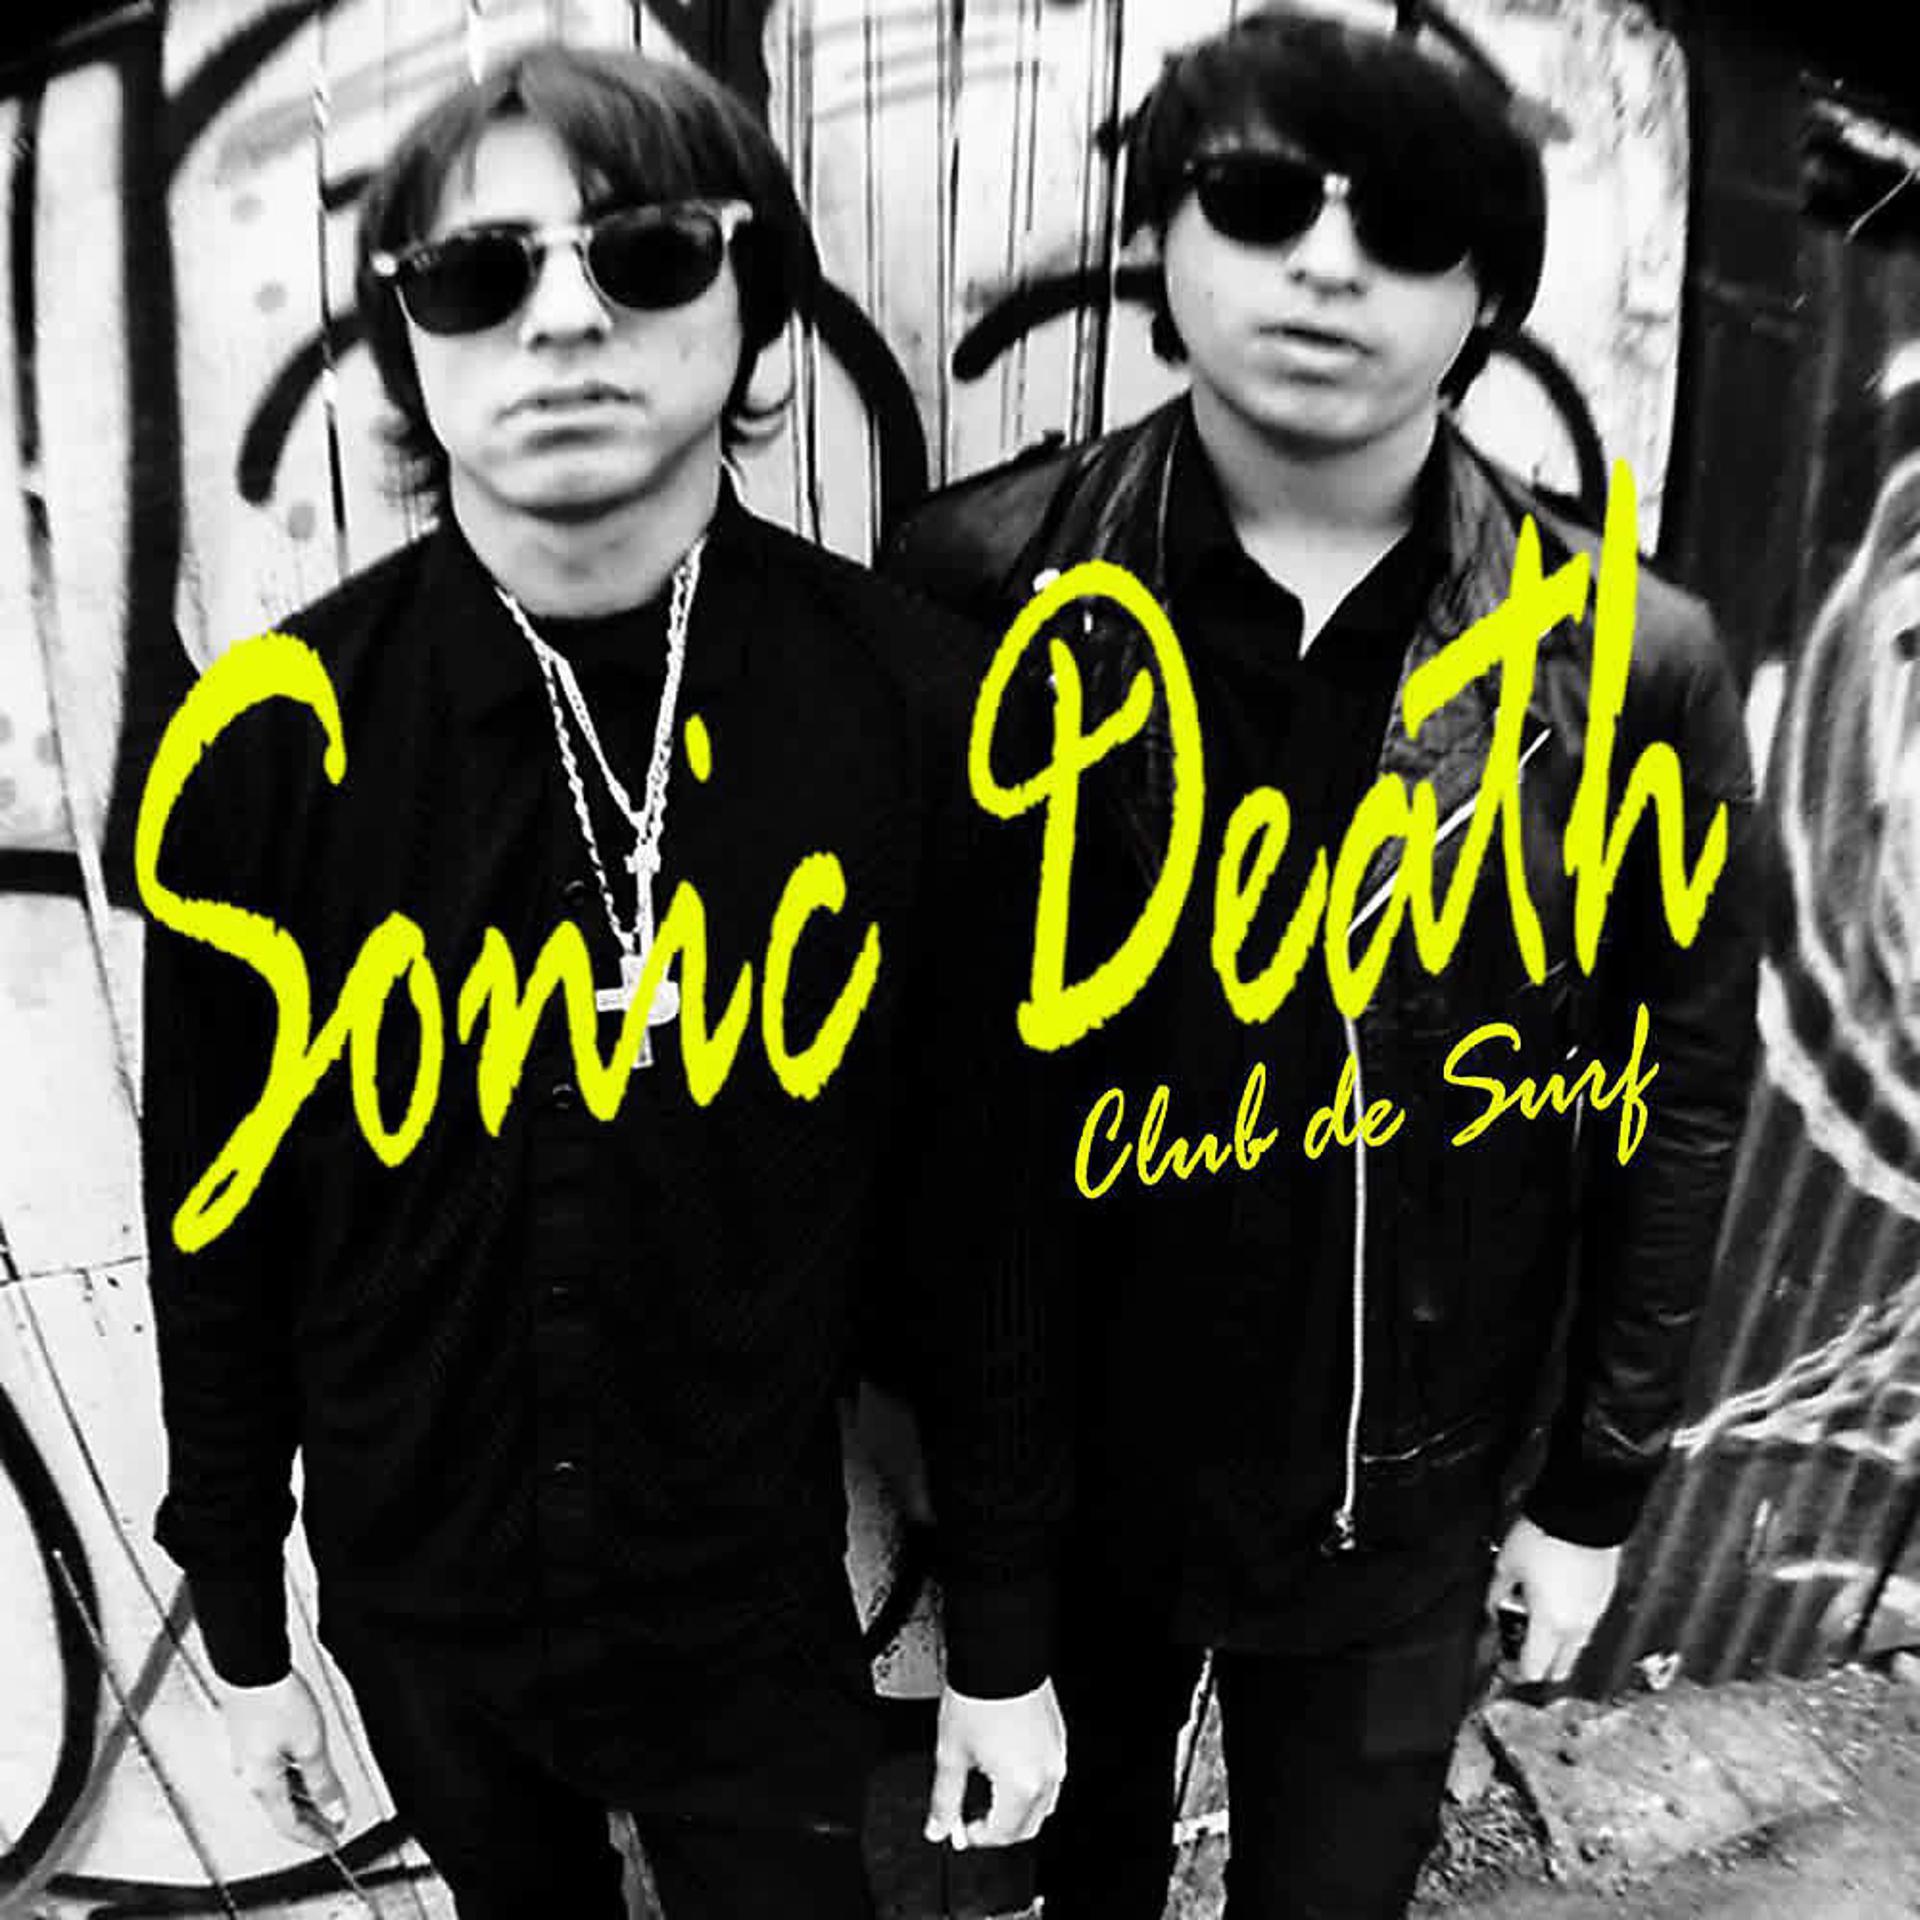 Постер альбома Sonic Death